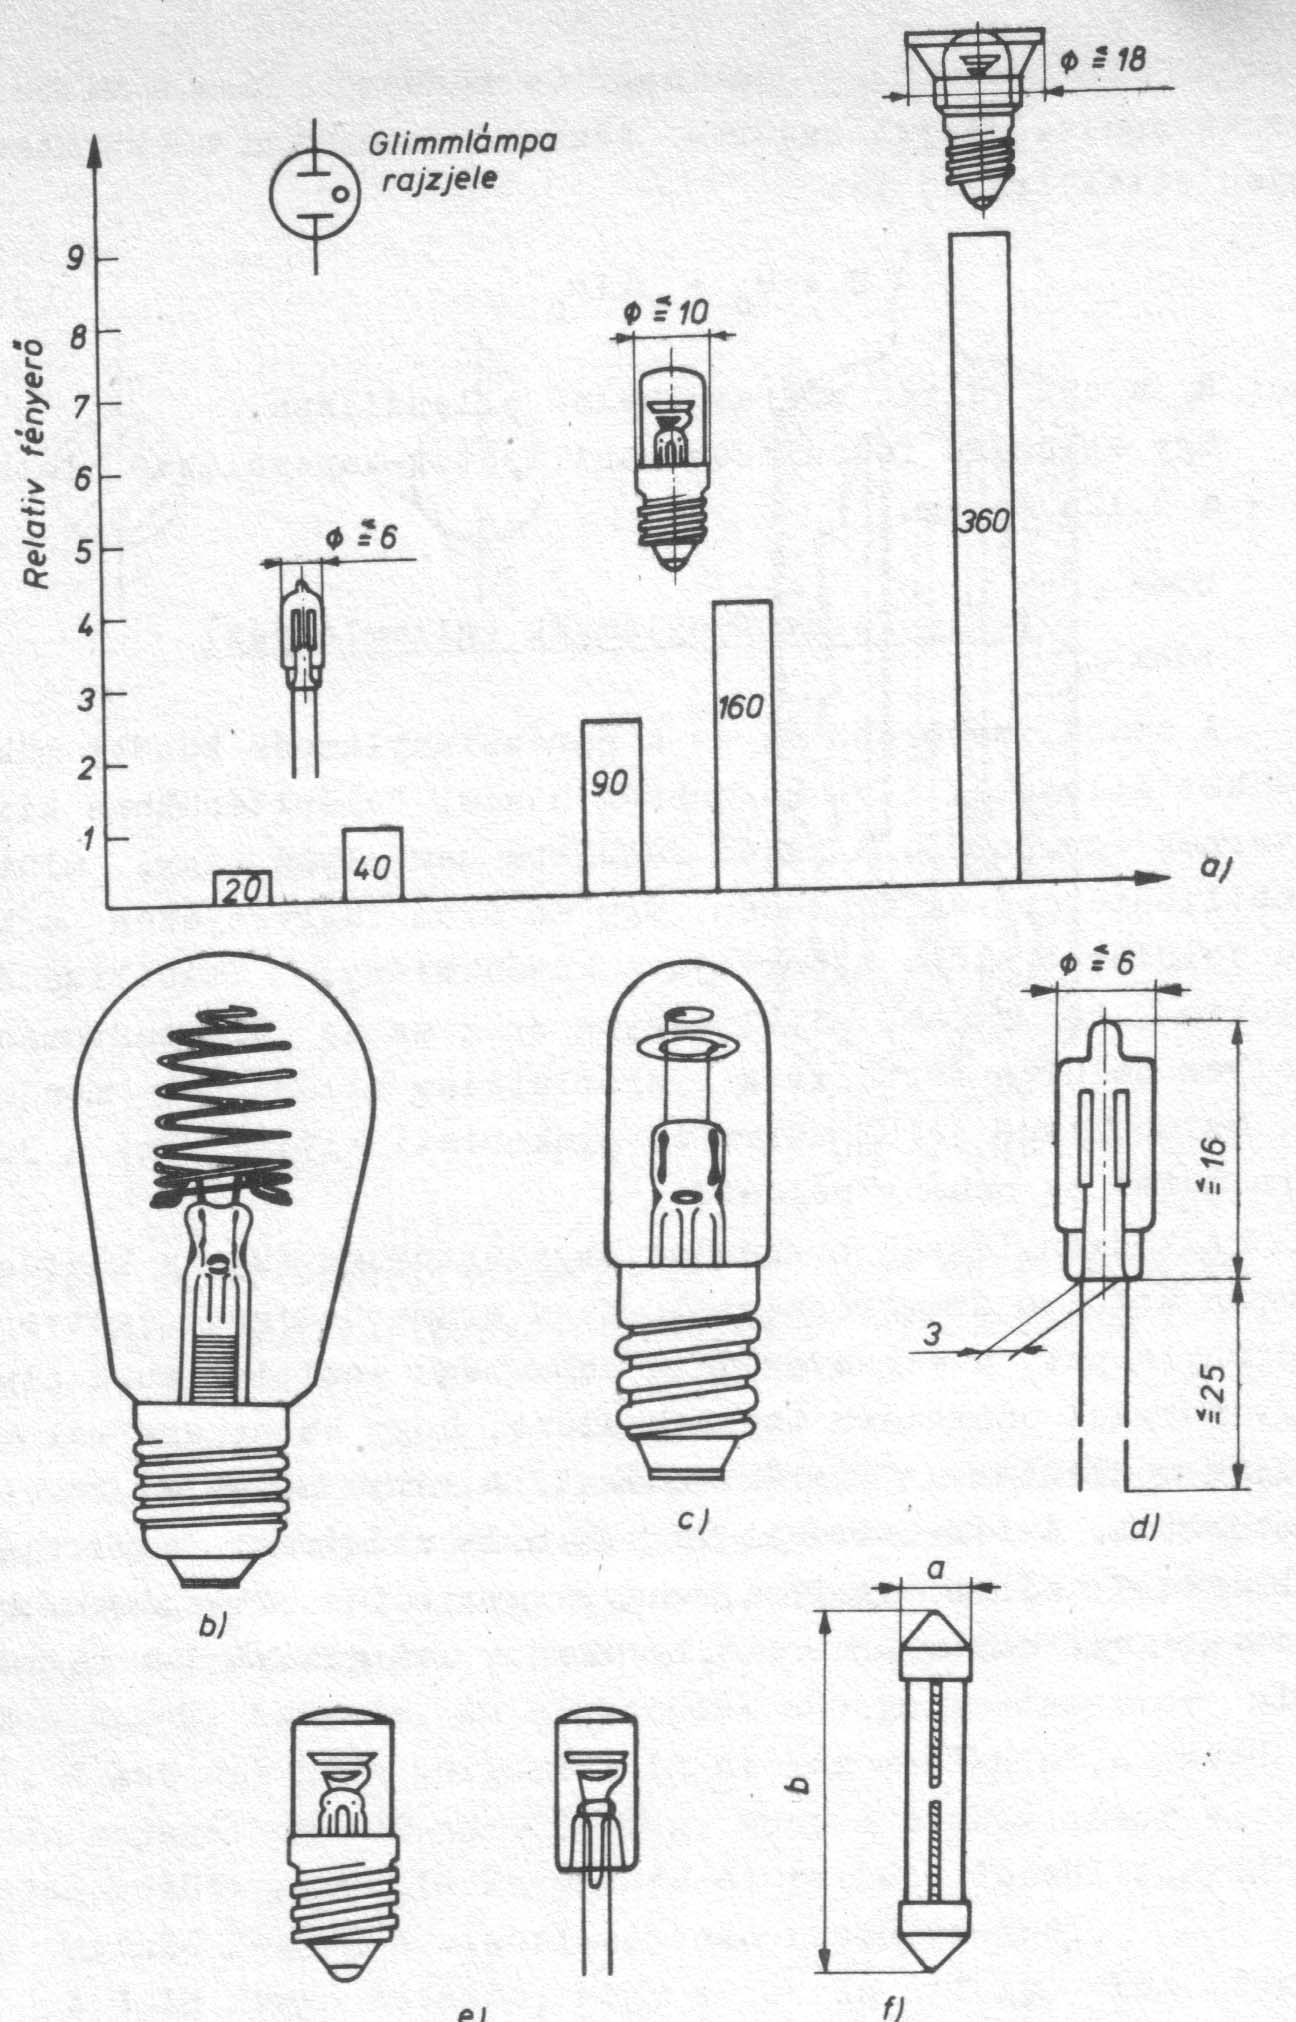 A glimmlámpák relatív fényereje és kiviteli formái; a) különféle glimmlámpák fényereje; b) jelzőlámpa; c) póluskereső lámpa; d) miniatűr jelzőlámpa; e) szubminiatűr lámpa; f) csavarhúzóban alkalmazott feszültségjelző lámpa (fázisceruza)